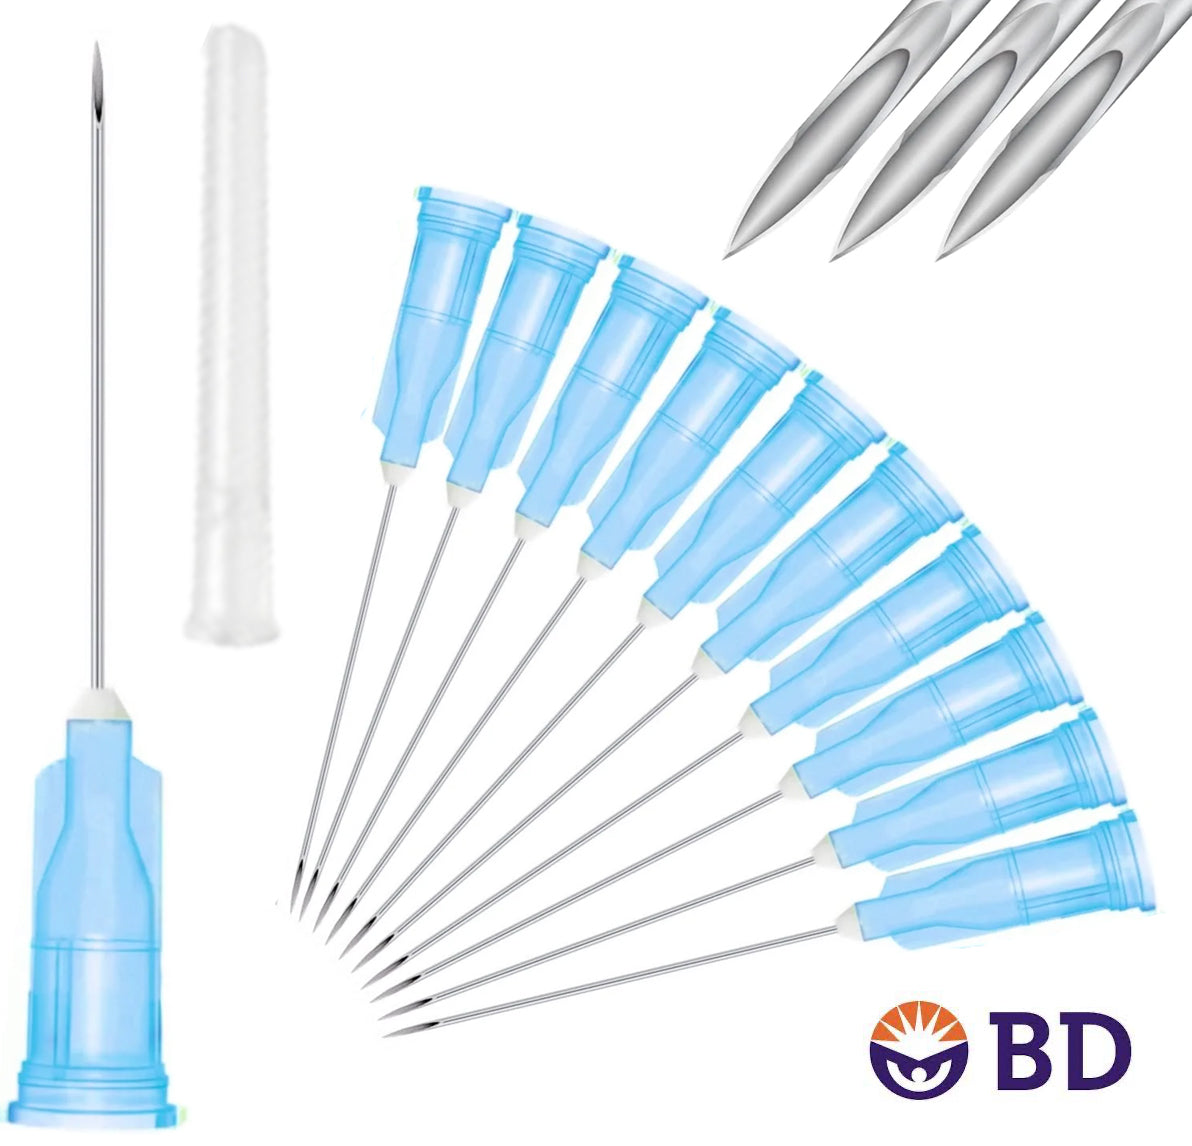 BD 25G x 1" Medical Needle (10pk)